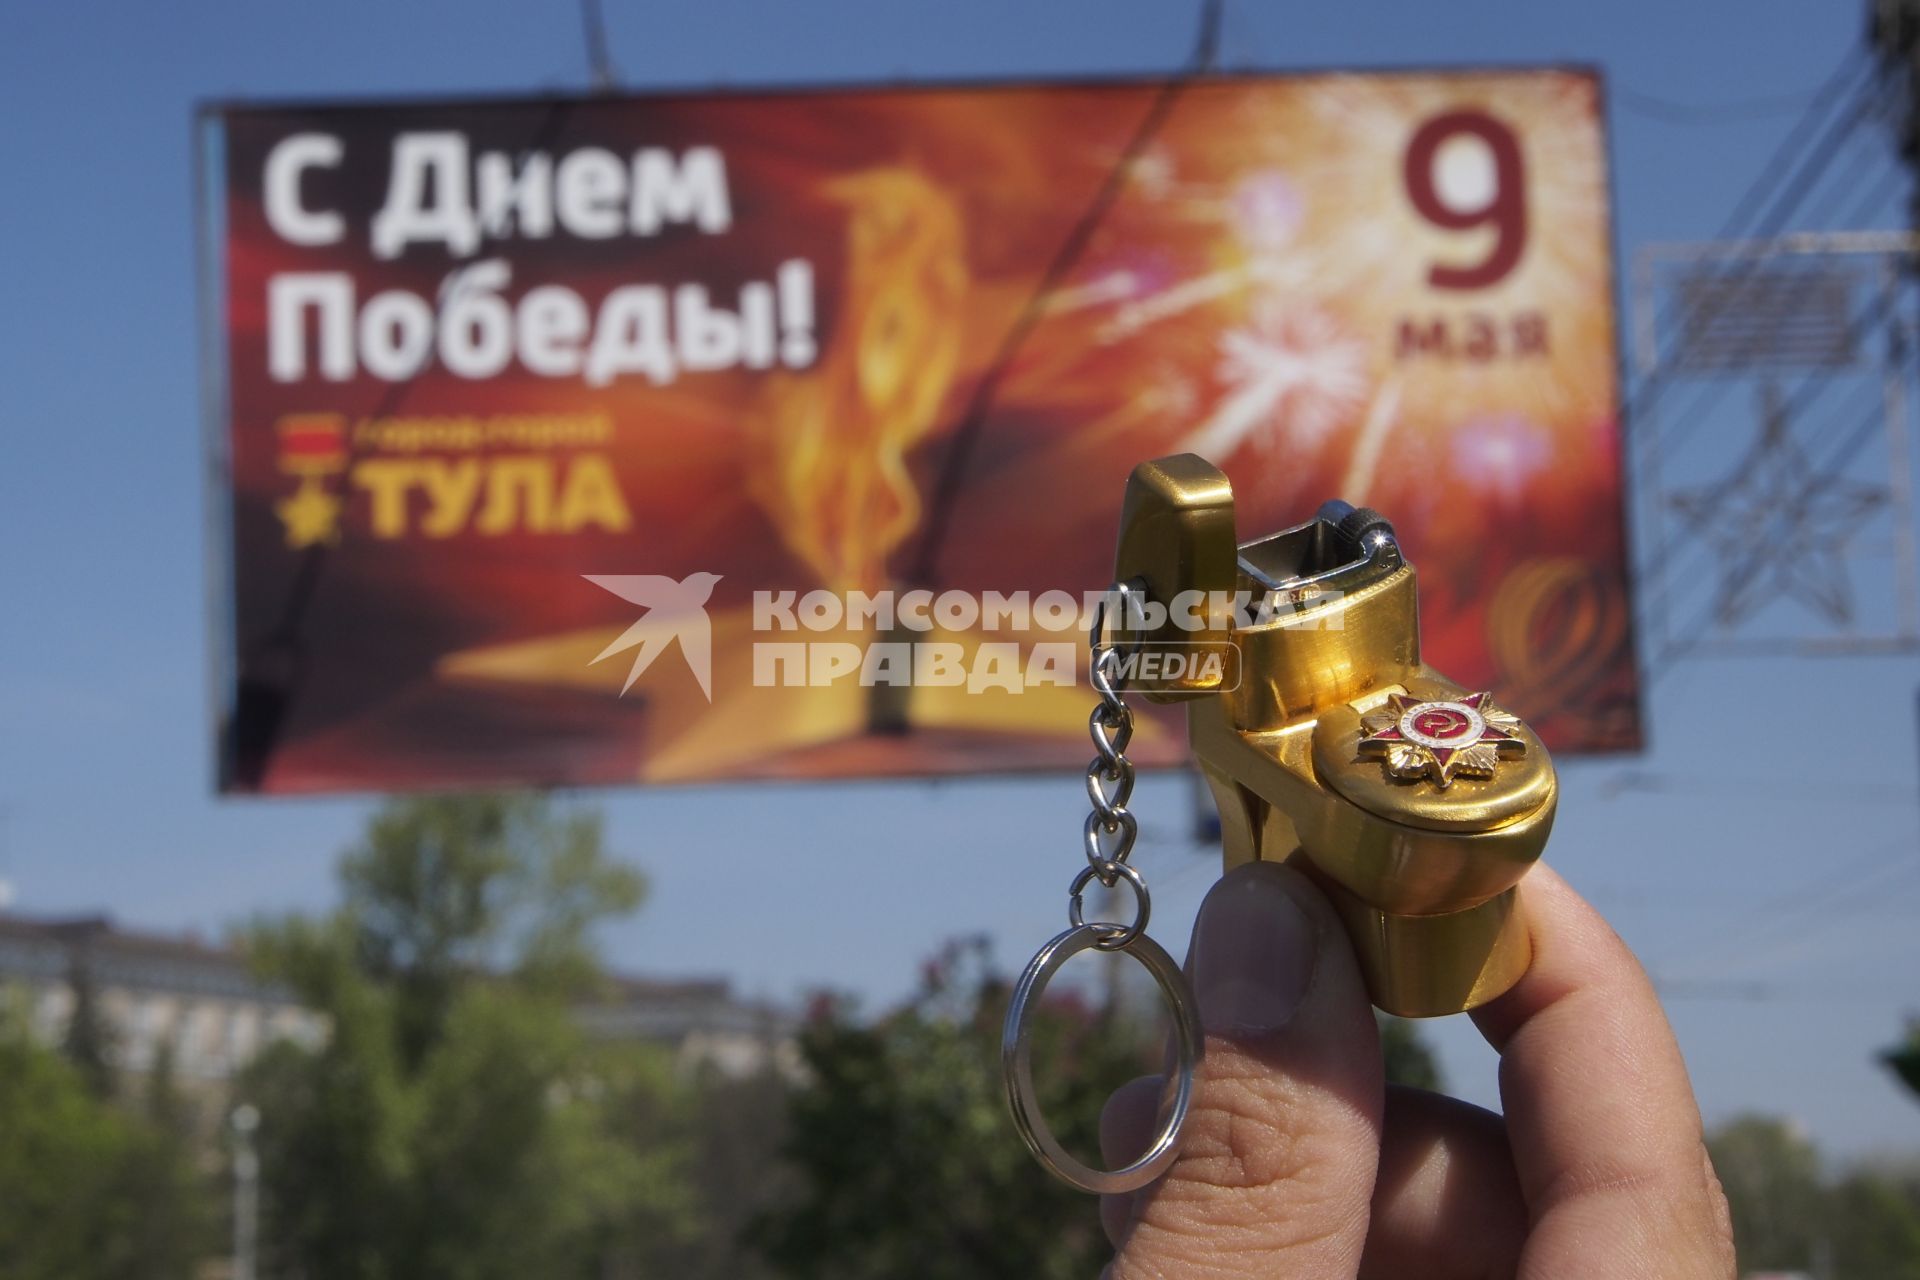 Сувениры в виде зажигалки-унитаза с орденом Отечественной войны продавались 8 мая 2014 за 150 руб. в сувенирной лавке на автовокзале Тулы.